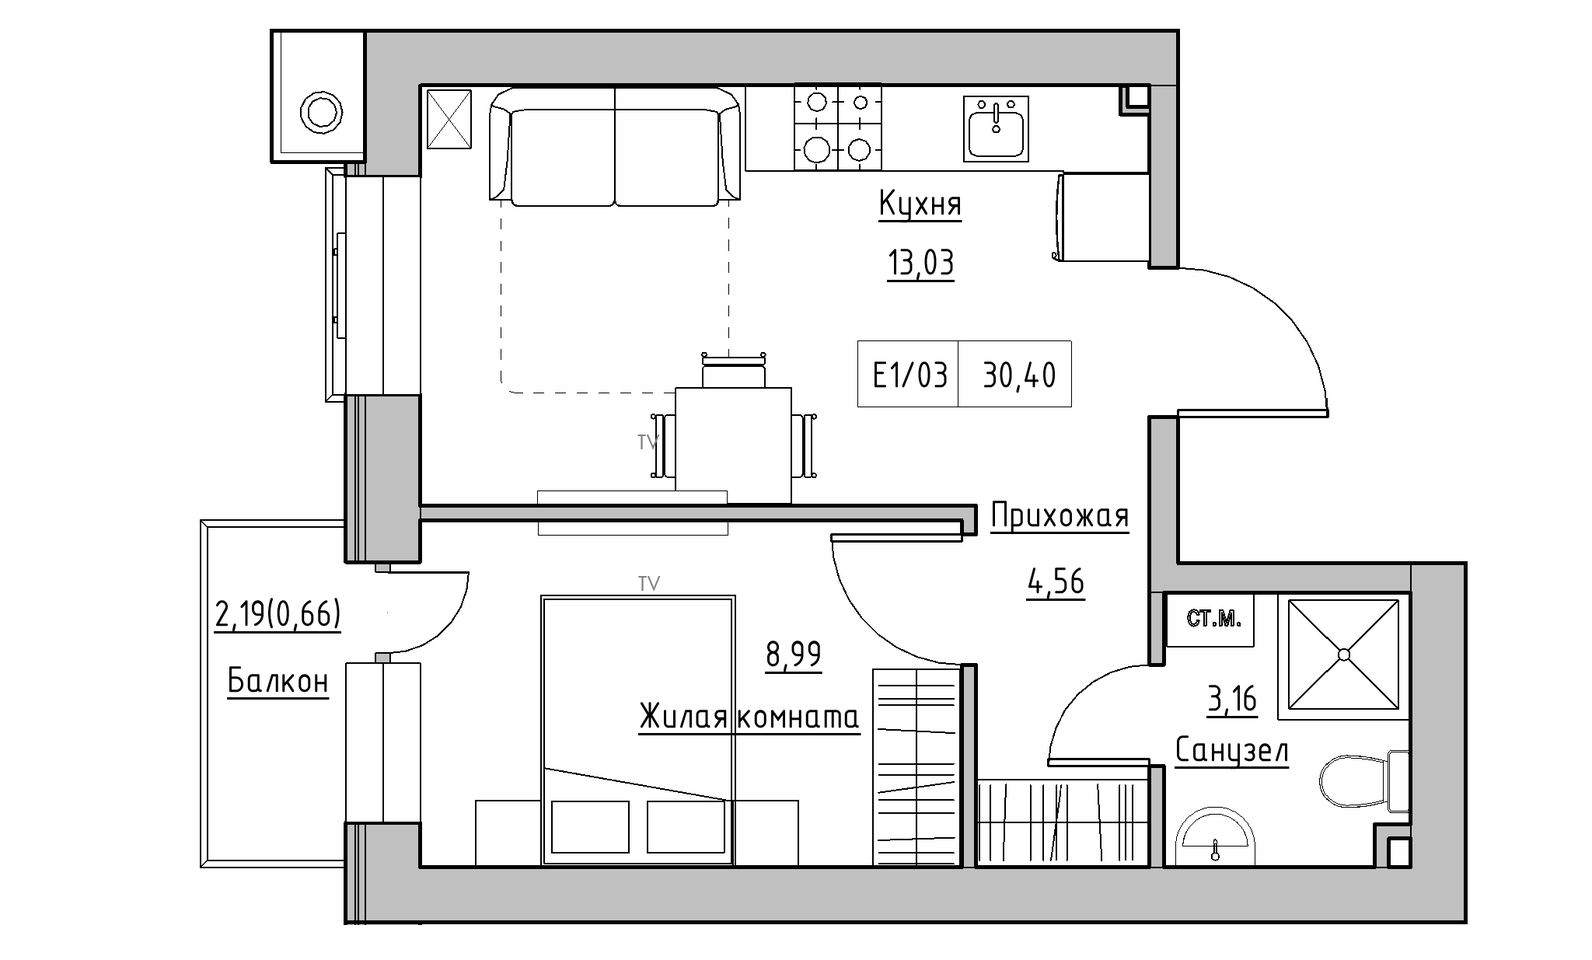 Планировка 1-к квартира площей 30.4м2, KS-014-03/0012.